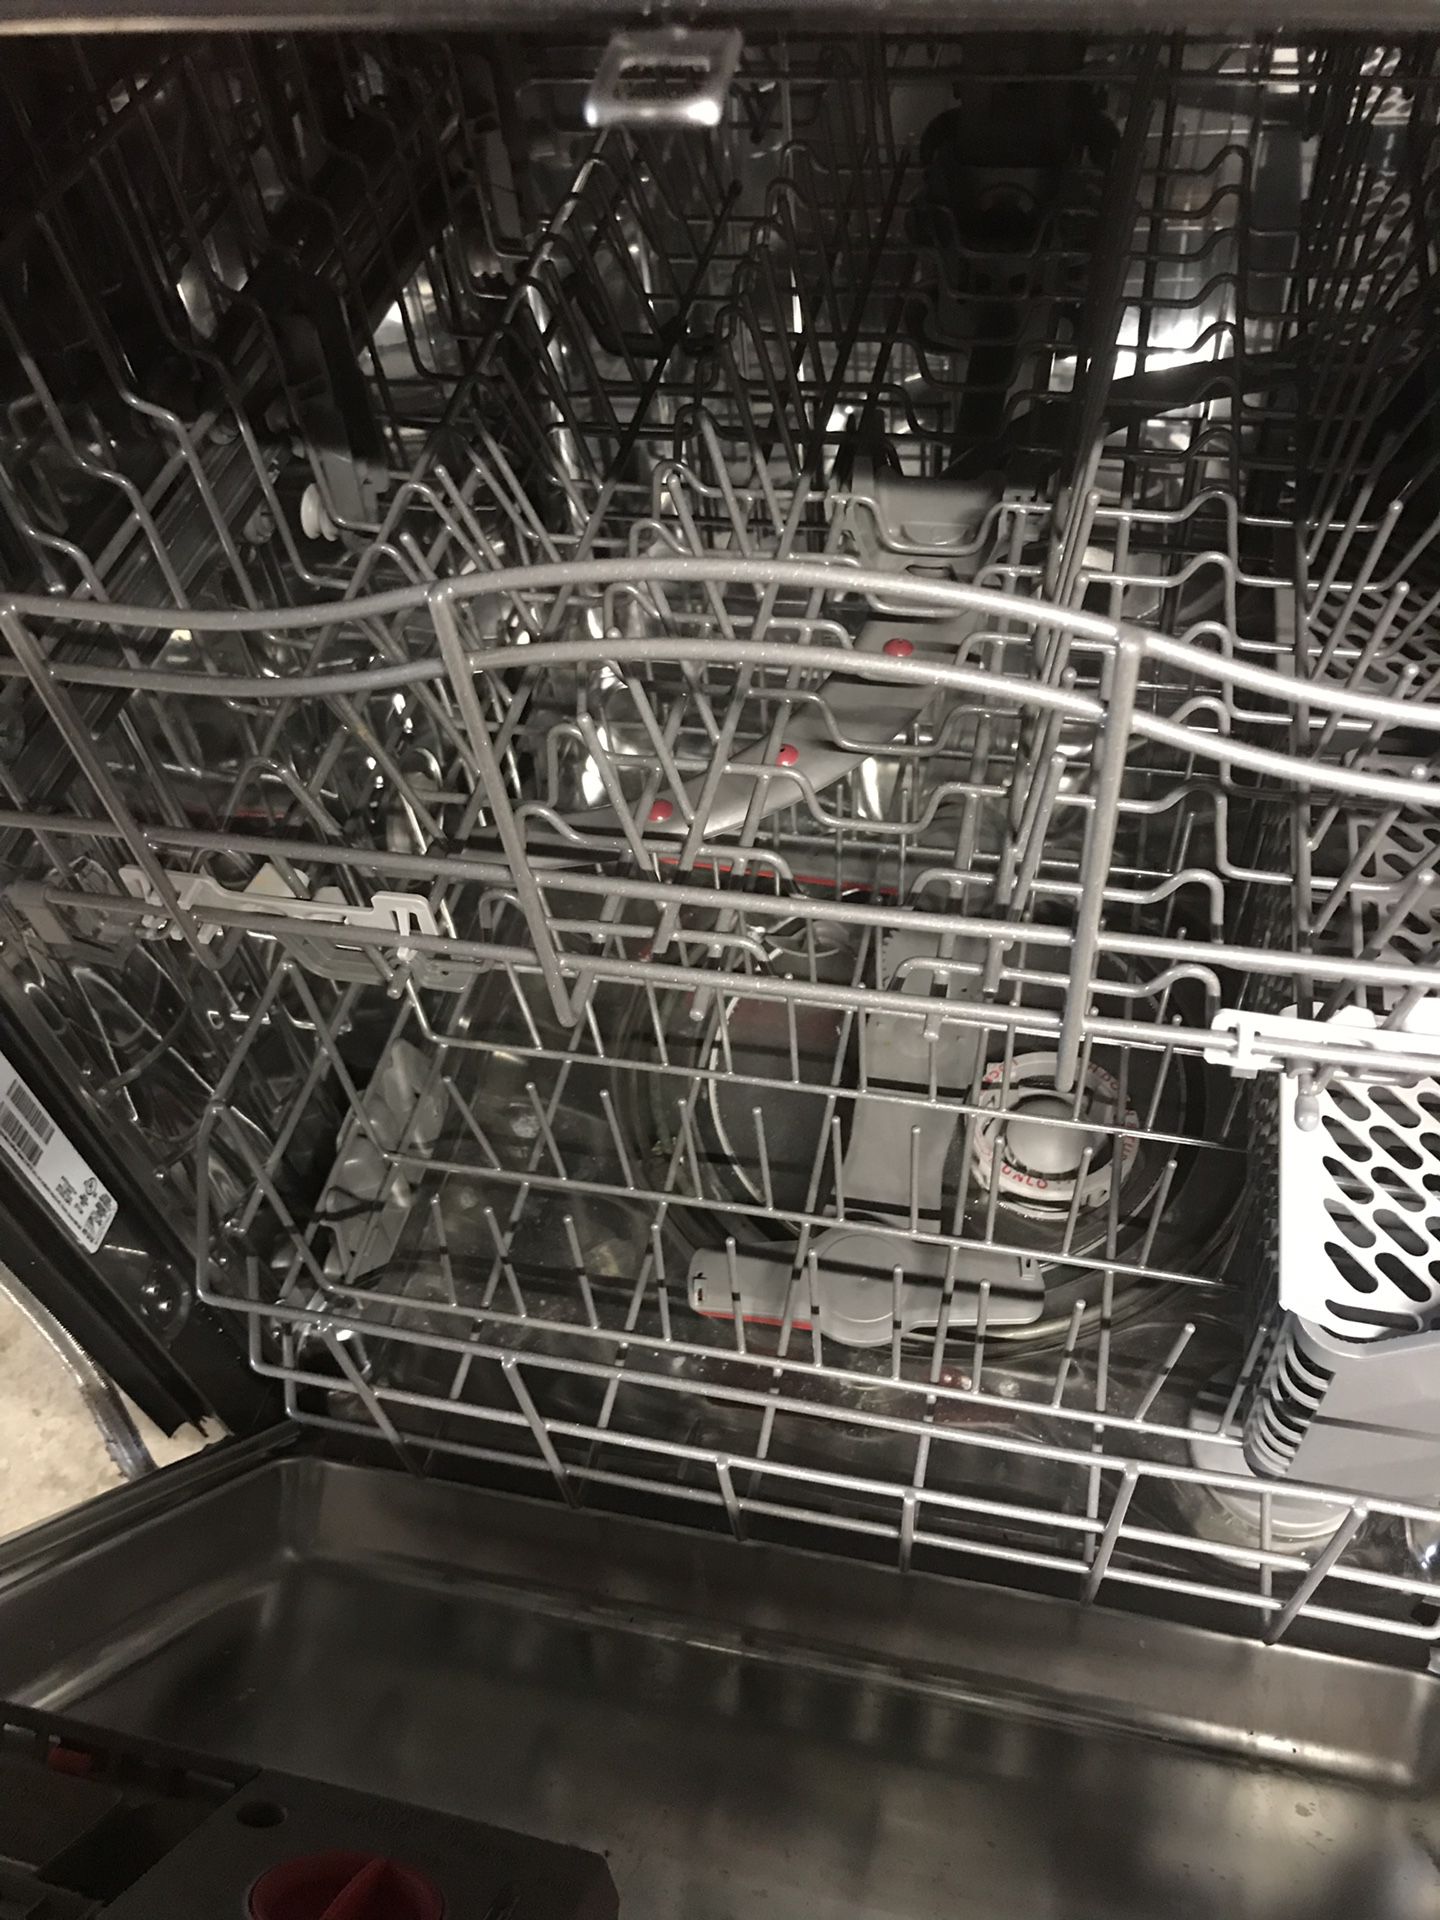 Kenmore elite dishwasher.